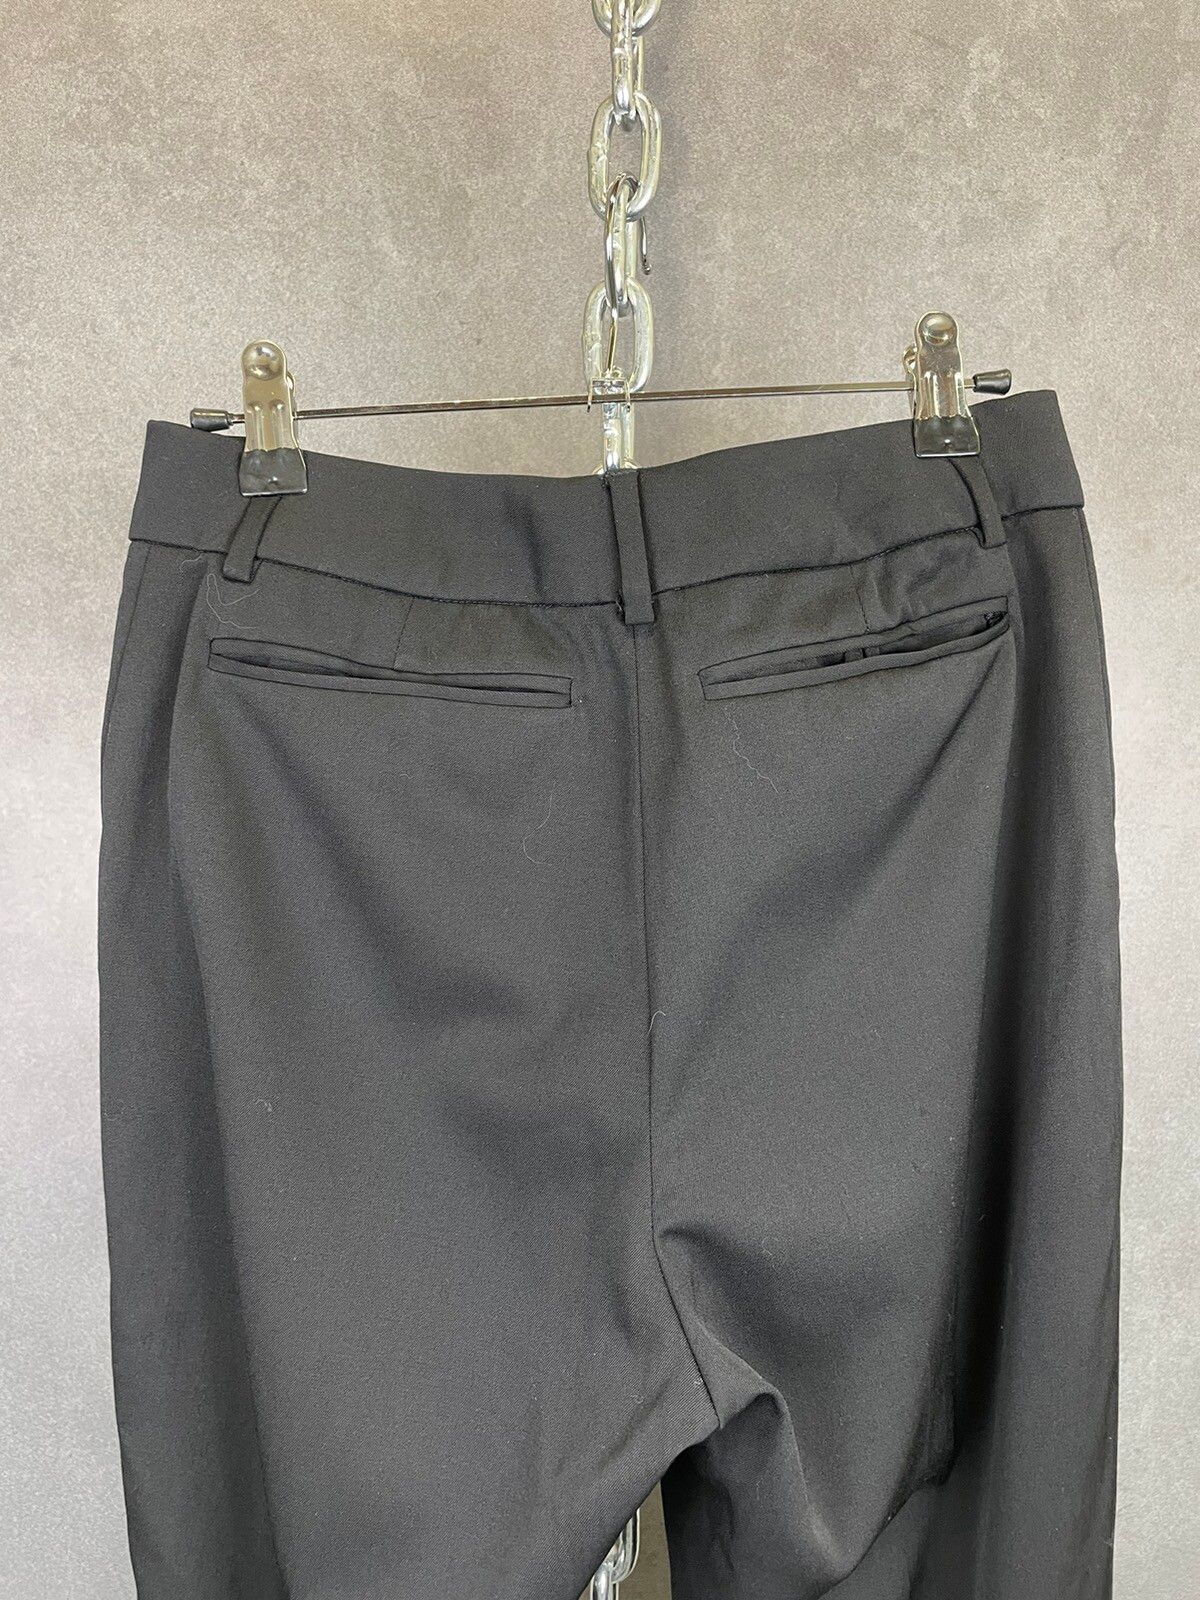 Yves Saint Laurent Vintage Yves Saint Laurent Black Wool Trousers Size 28”x30” Size 28" / US 6 / IT 42 - 9 Thumbnail